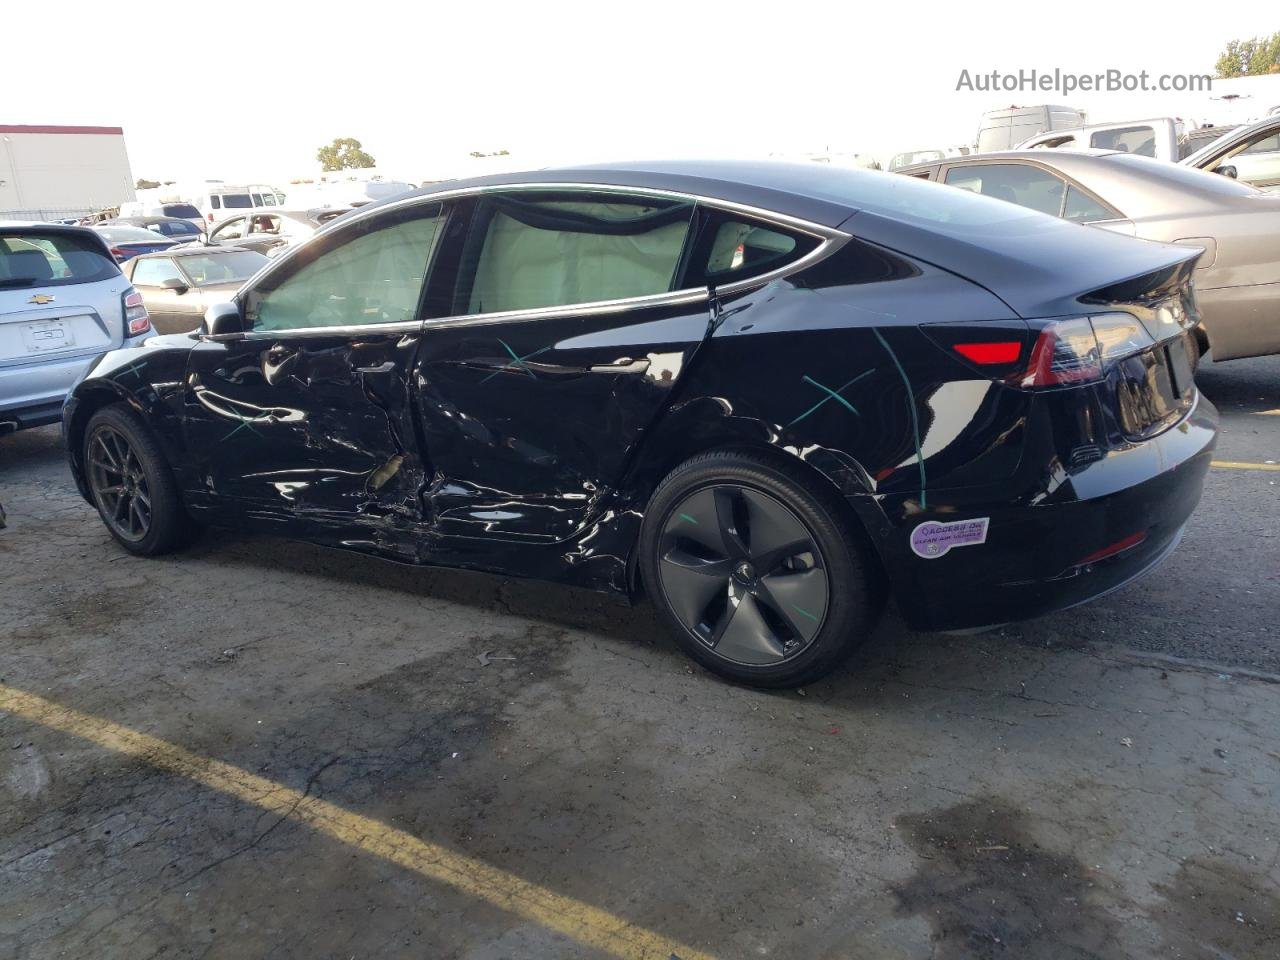 2019 Tesla Model 3  Black vin: 5YJ3E1EAXKF410878